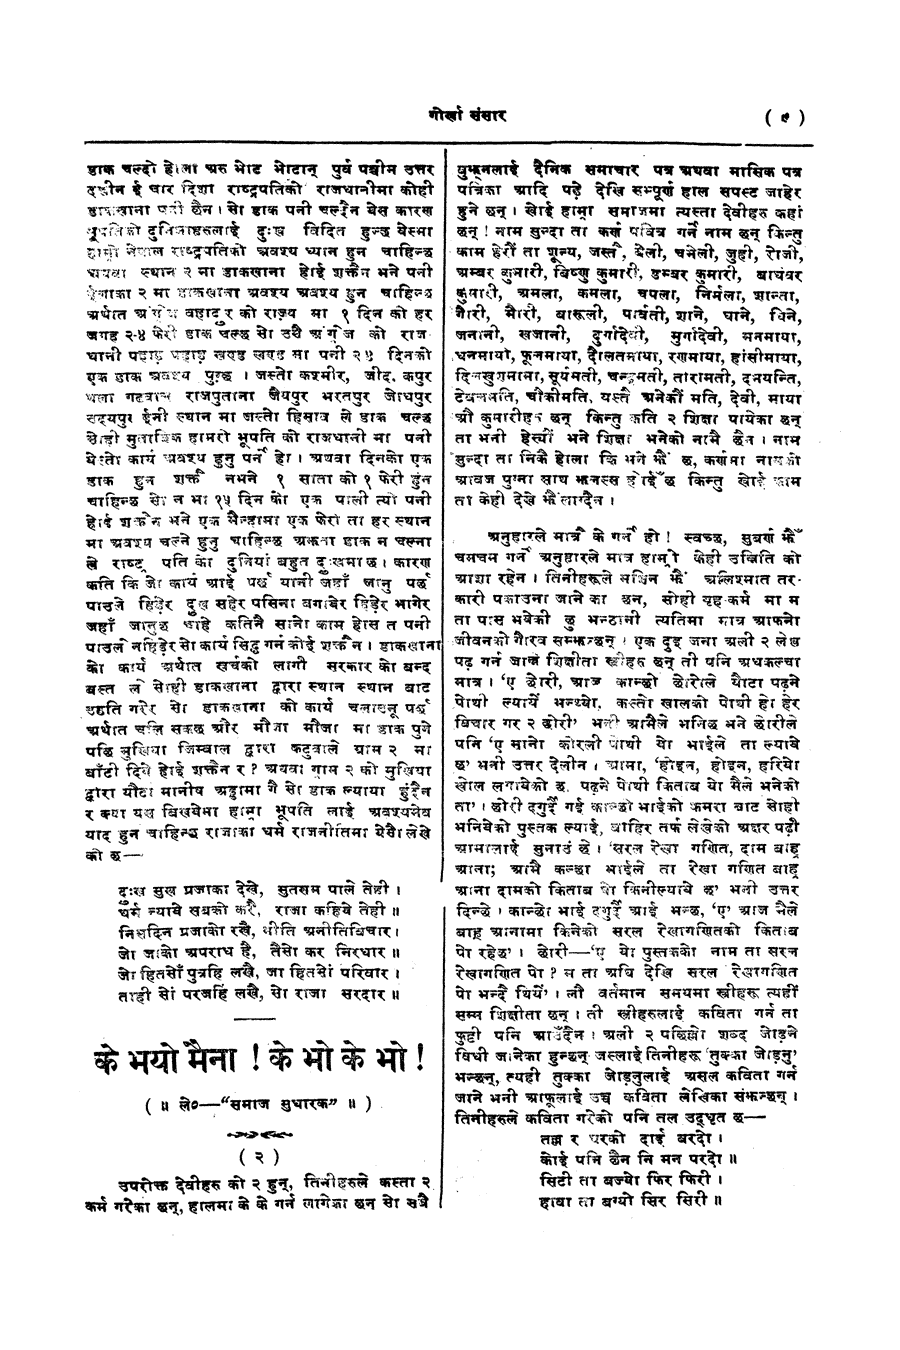 Gorkha Sansar, 7 Feb 1928, page 9